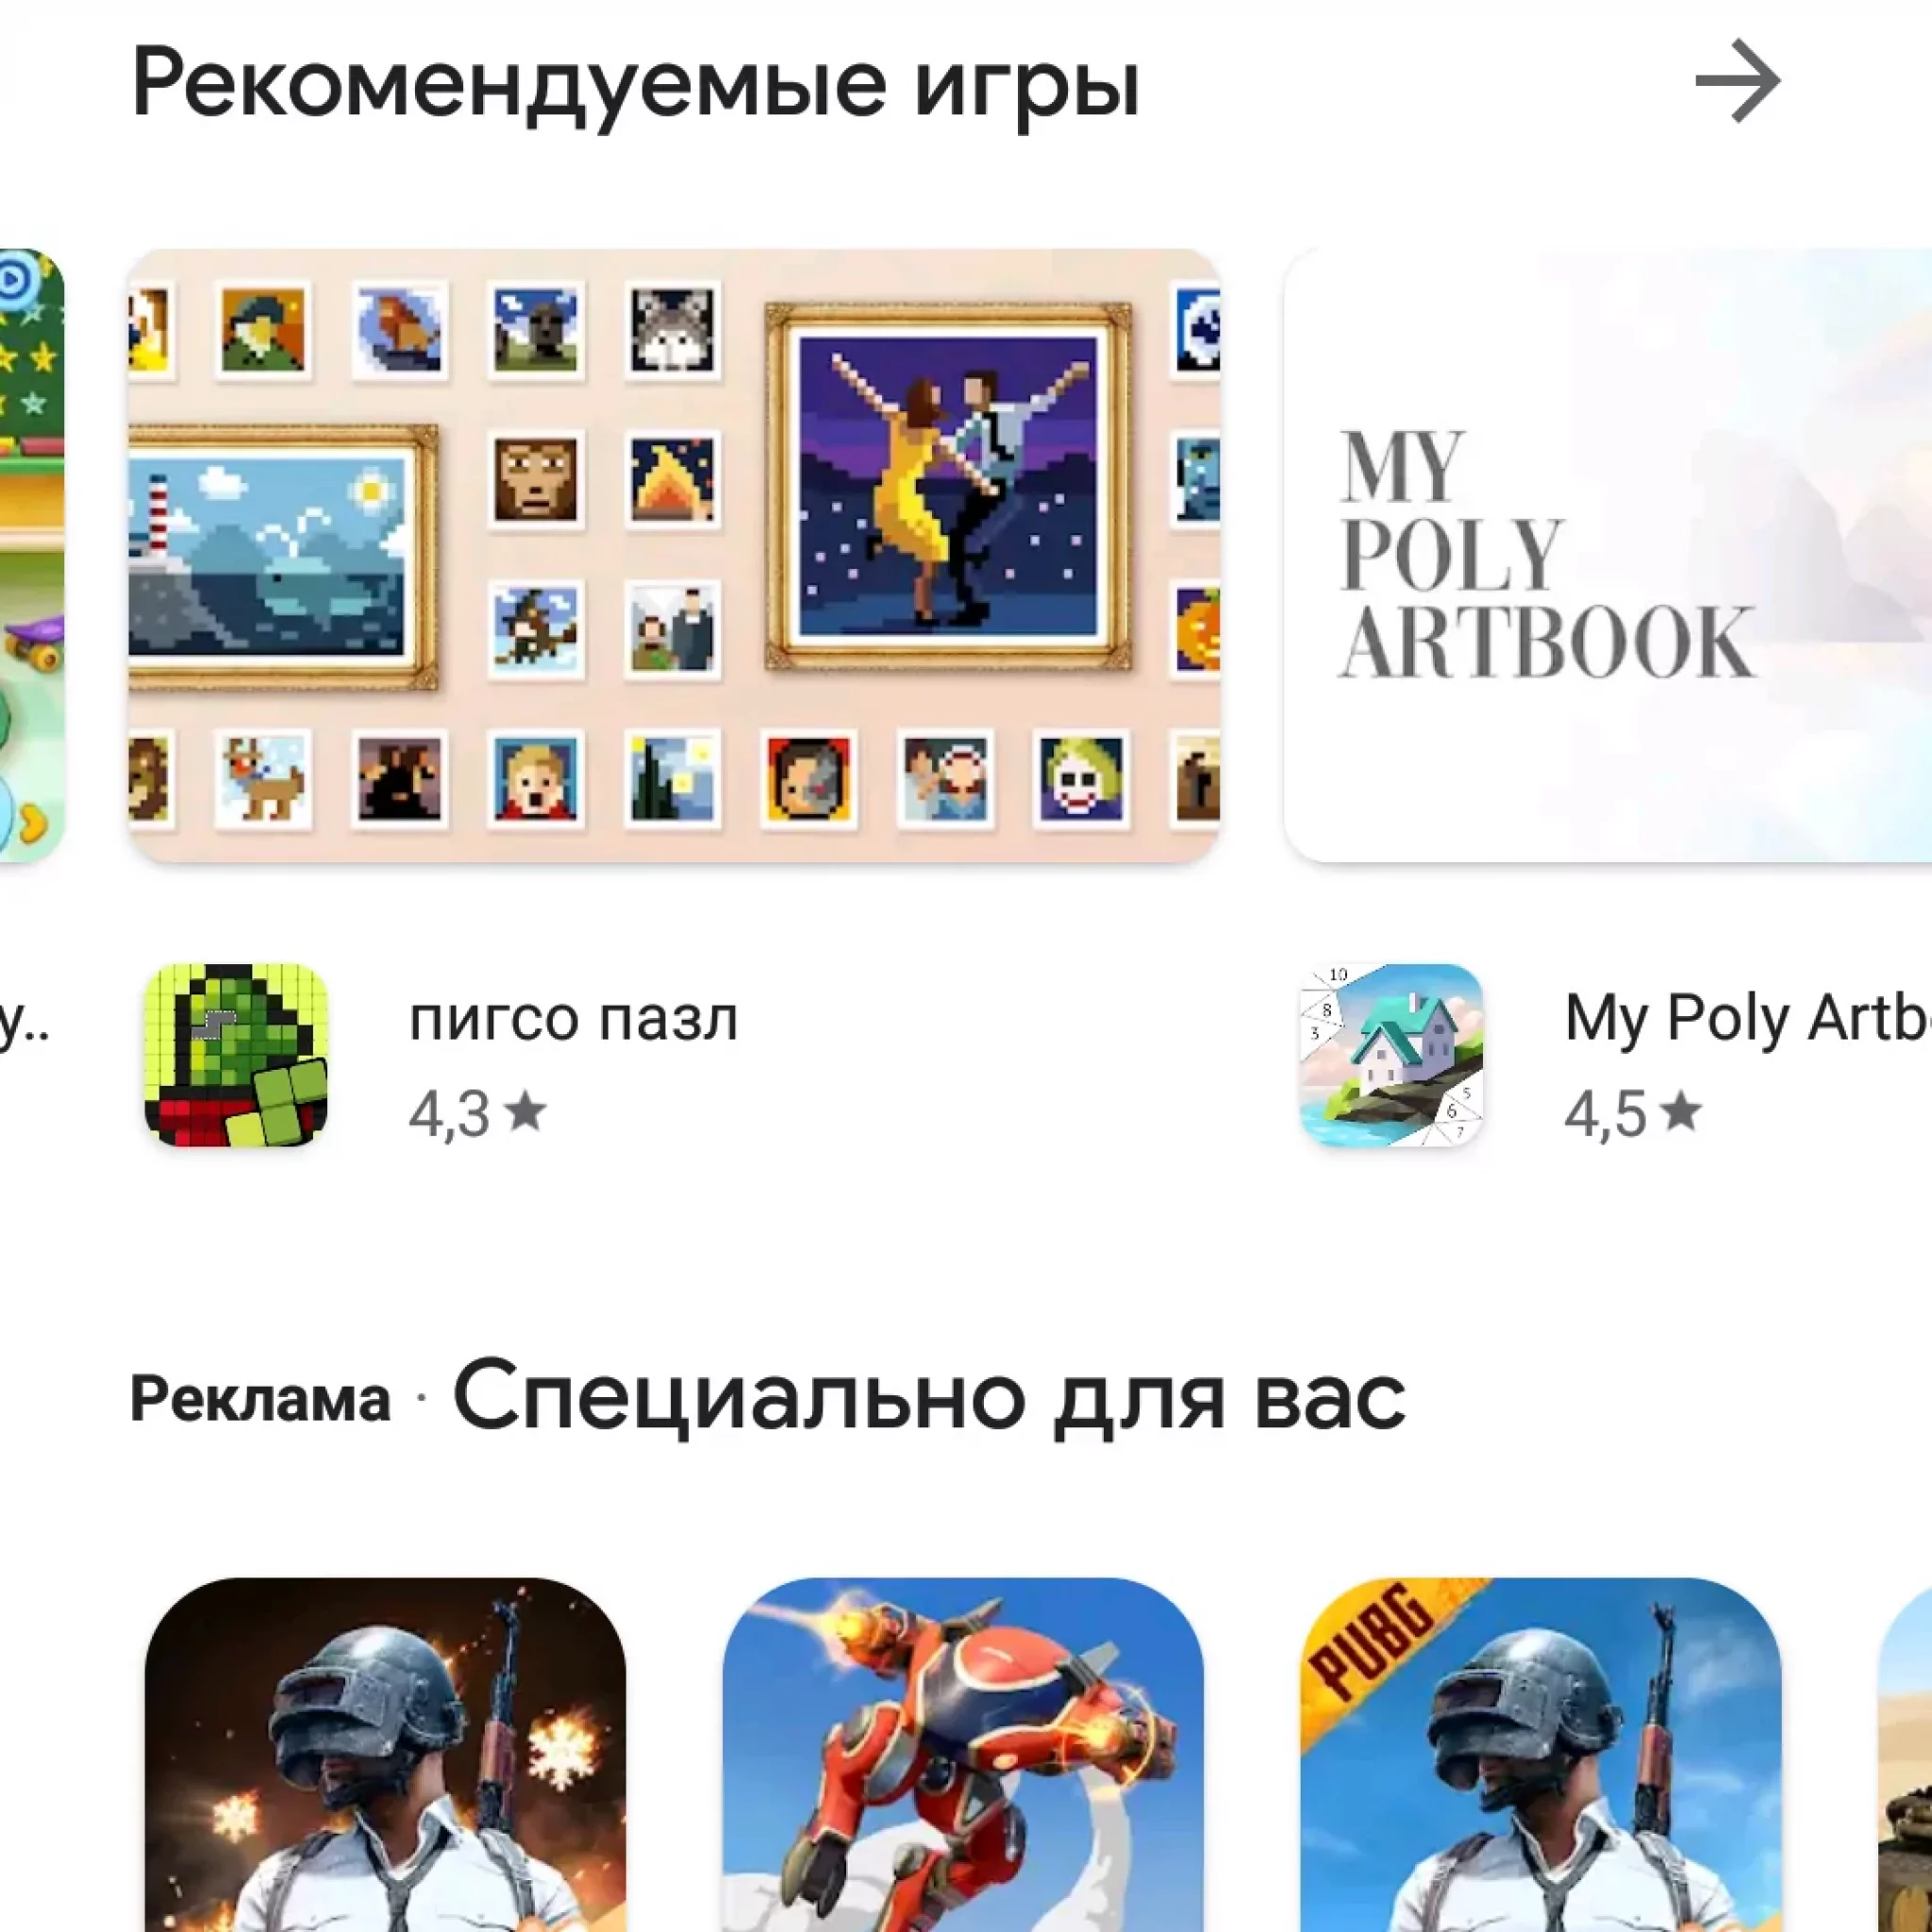 Приложение телеграмм для андроид скачать бесплатно на русском языке без регистрации для телефона фото 56